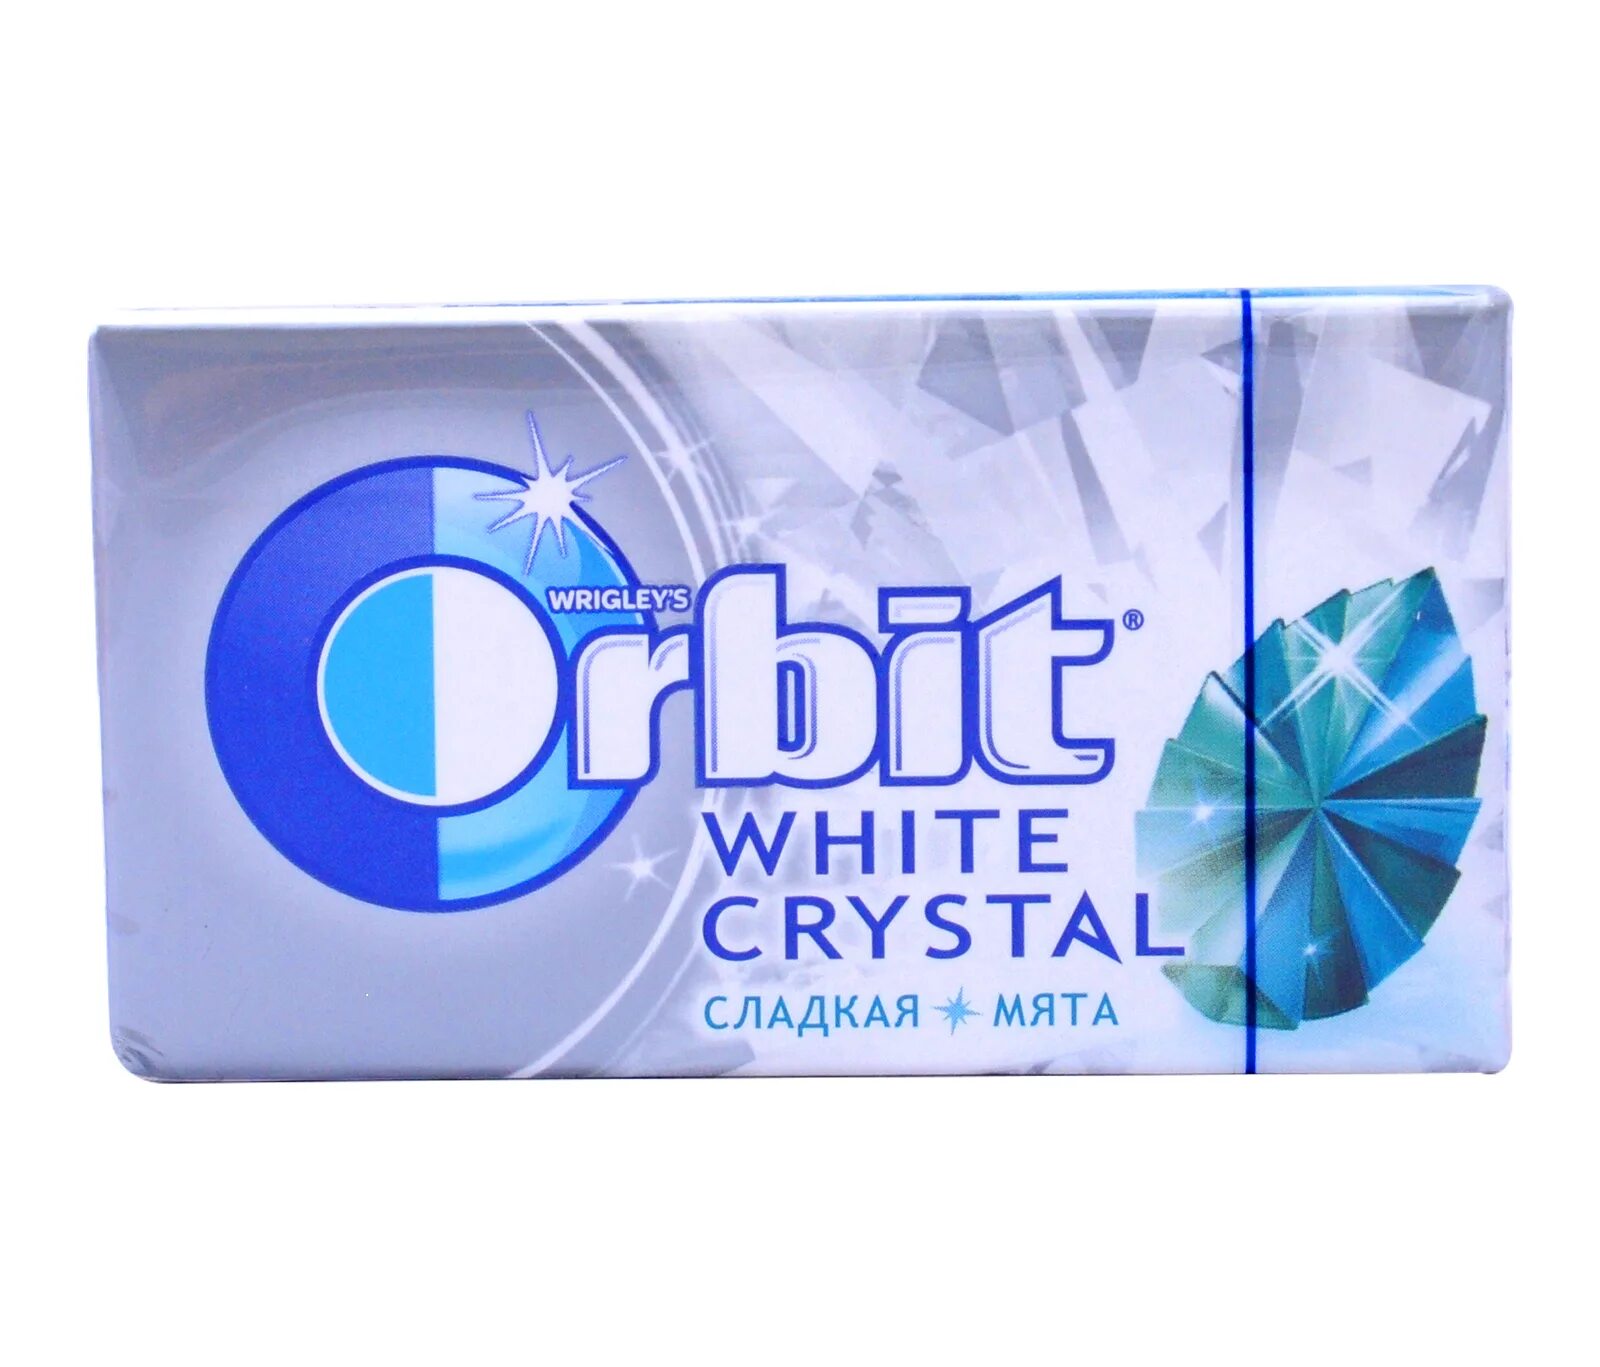 Мята тг канал. Orbit White Crystal. Орбит White сладкая мята. Orbit Orbit White Crystal. Кристальная жвачка.